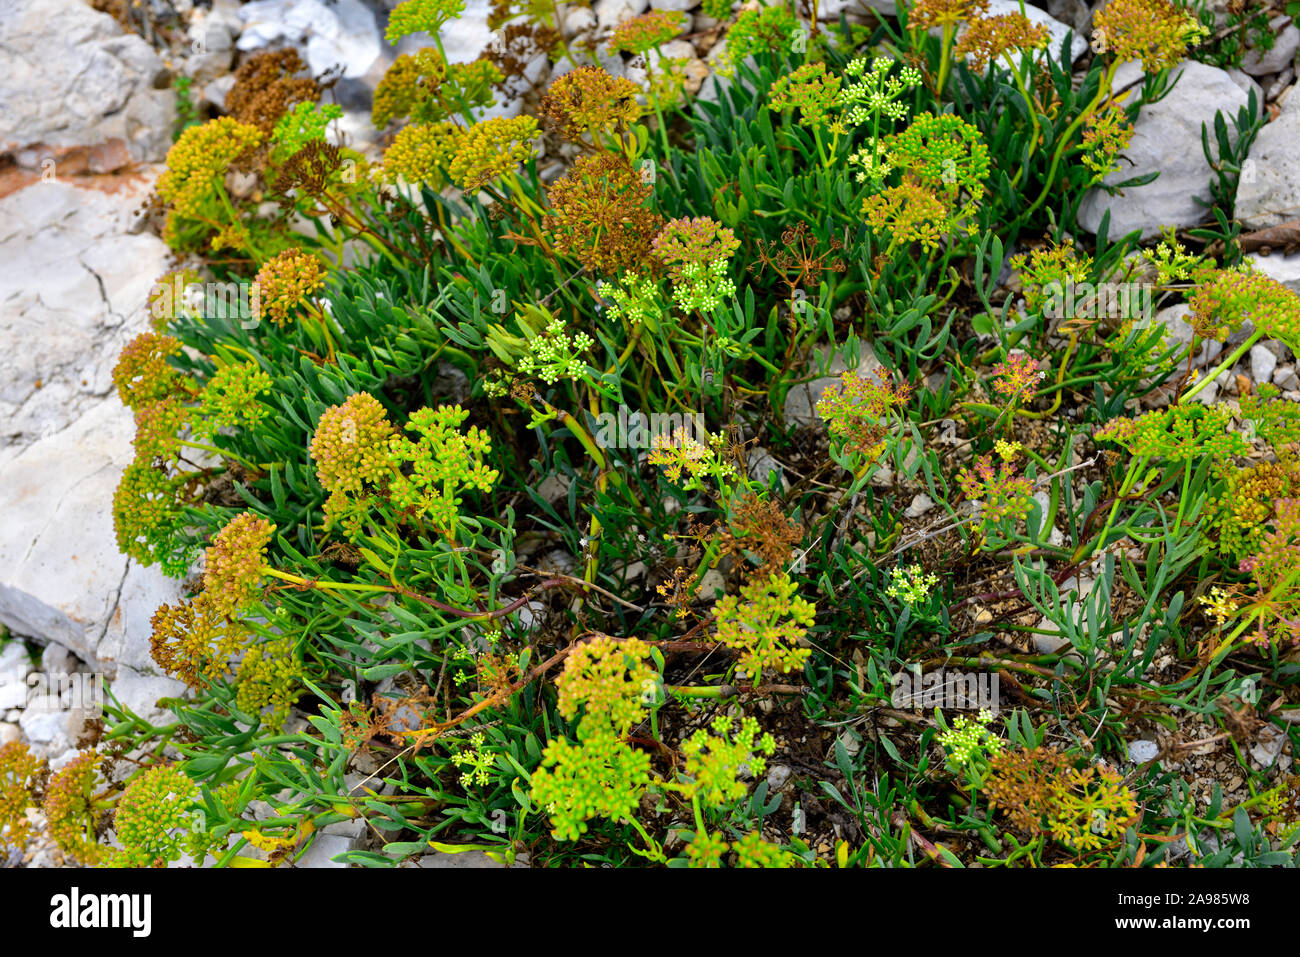 Samphire une plante en fleurs de plus en plus parmi les rochers de calcaire sur l'estran de l'Adriatique, Croatie Banque D'Images